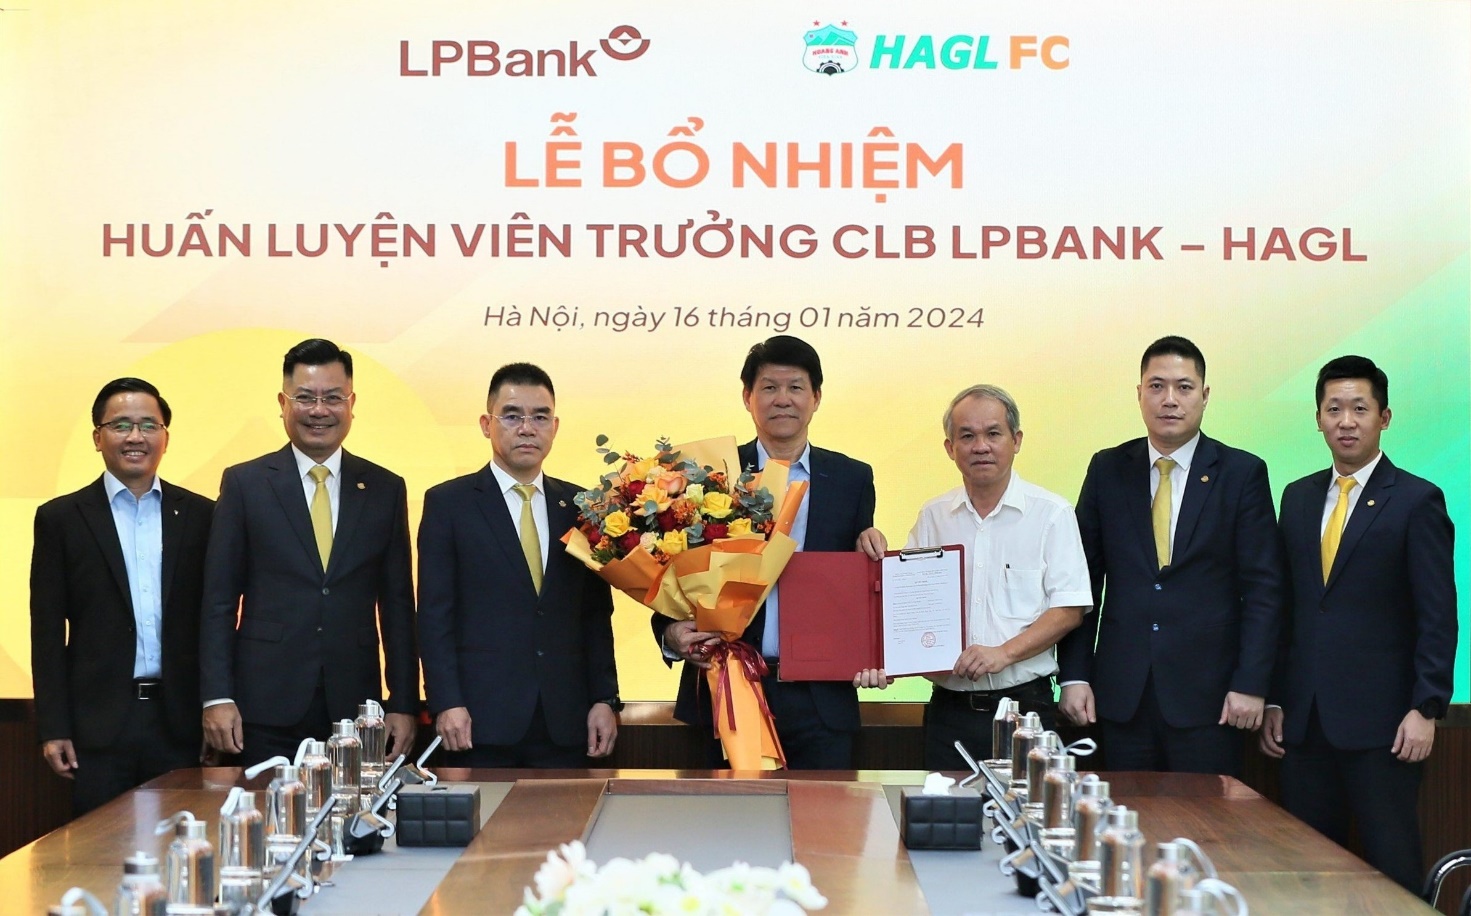 Ông Vũ Tiến Thành chính thức được trao bổ nhiệm làm Huấn luyện viên trưởng CLB Bóng đá LPBank HAGL